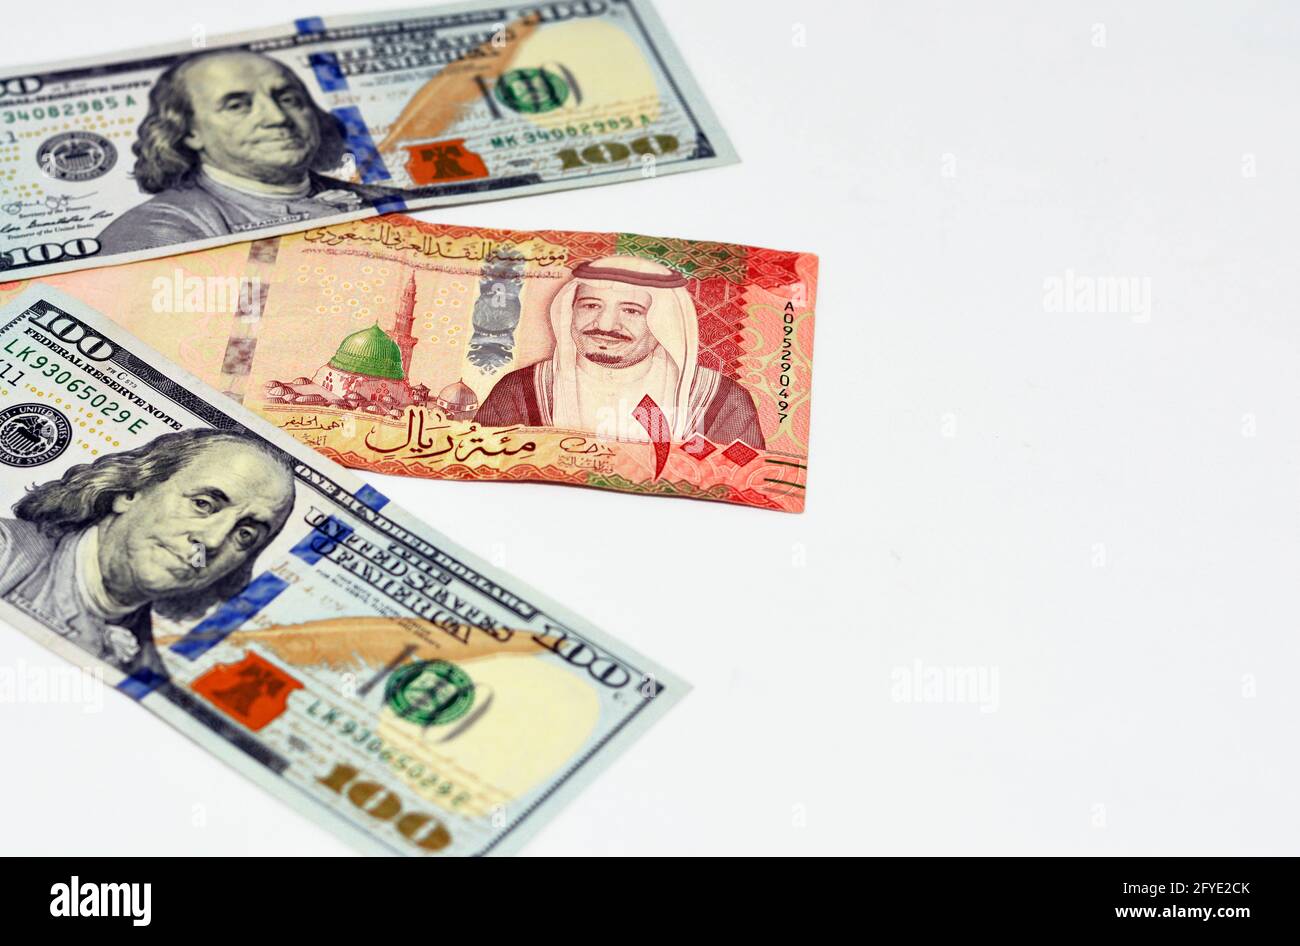 American Hundert Dollar Rechnung und Saudi-Arabien riyals Währung Banknoten  von 100 Saudi-Riyals, Saudi-Arabien Geld und amerikanische Dollar Währungen  Stockfotografie - Alamy